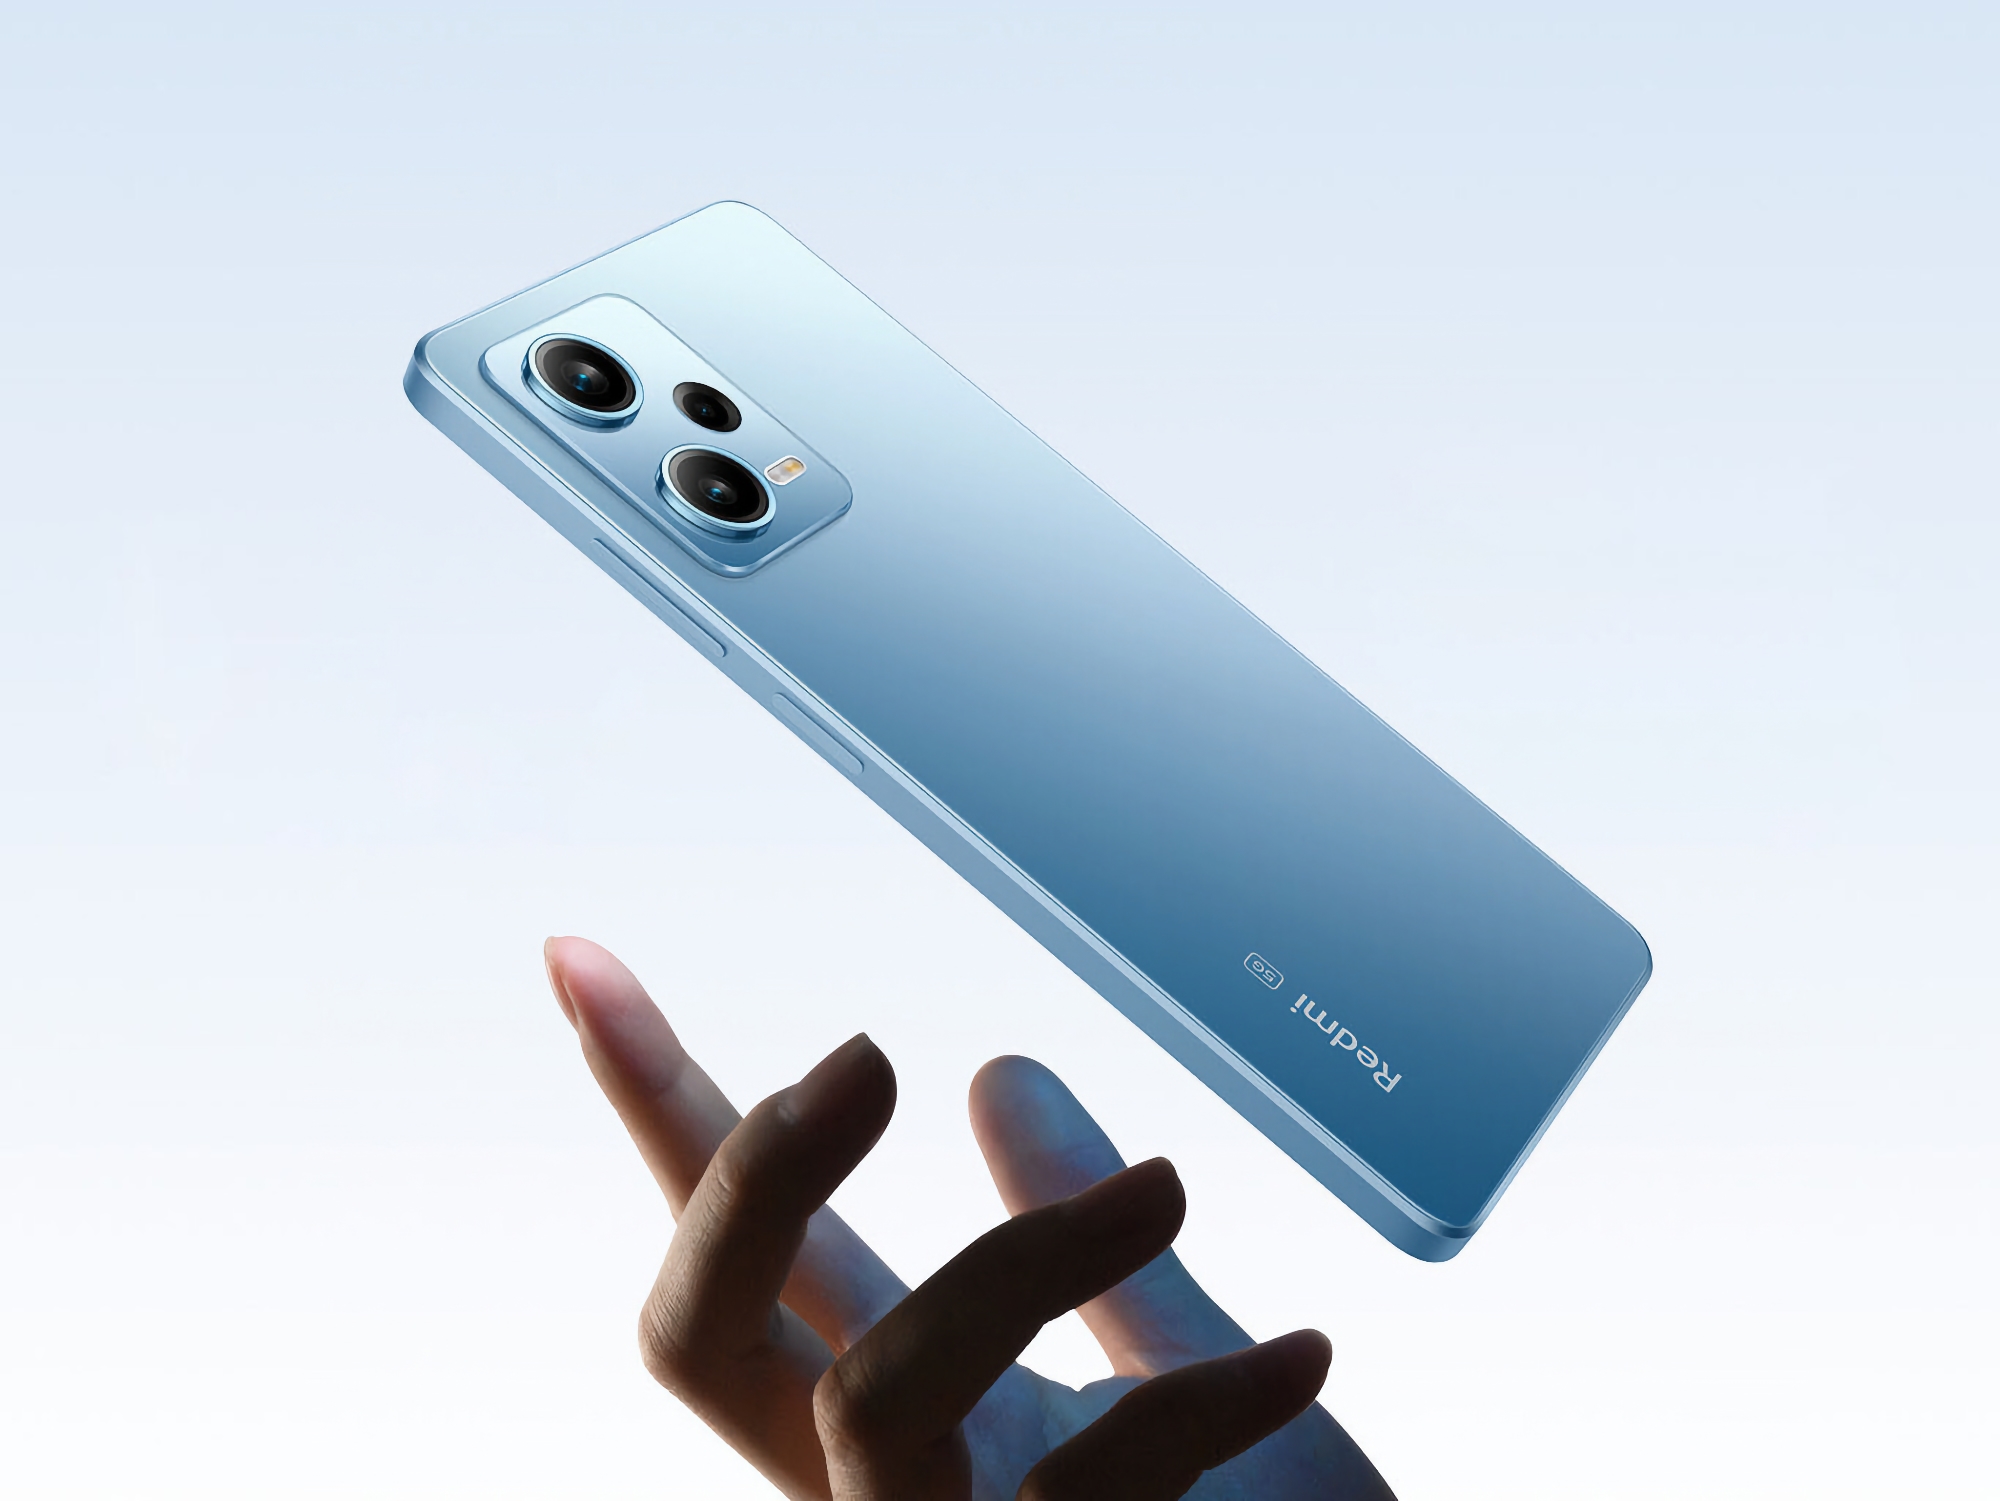 Annonce proche : Xiaomi lance le teaser du smartphone Redmi Note 12 Turbo équipé d'une puce Snapdragon 7+ Gen 2